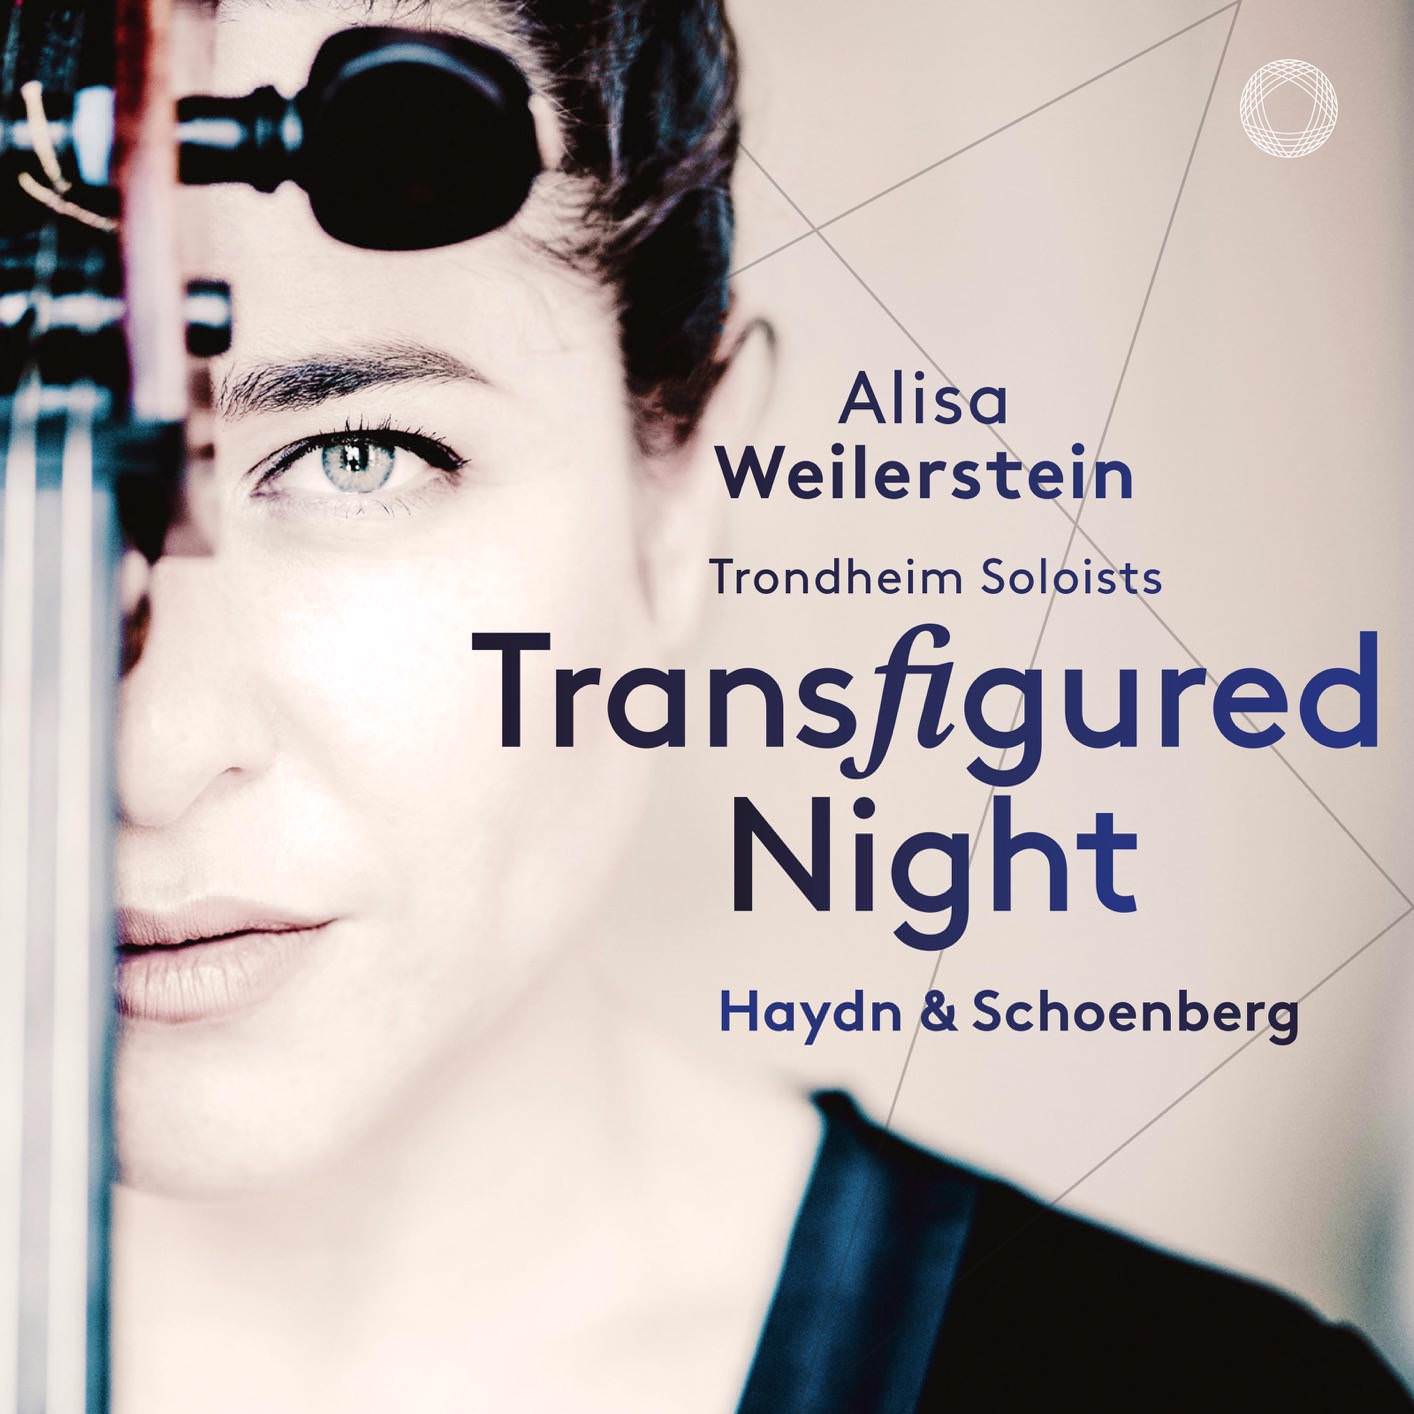 Alisa Weilerstein & Trondheim Soloists - Transfigured Night (2018) [FLAC 24bit/96kHz]